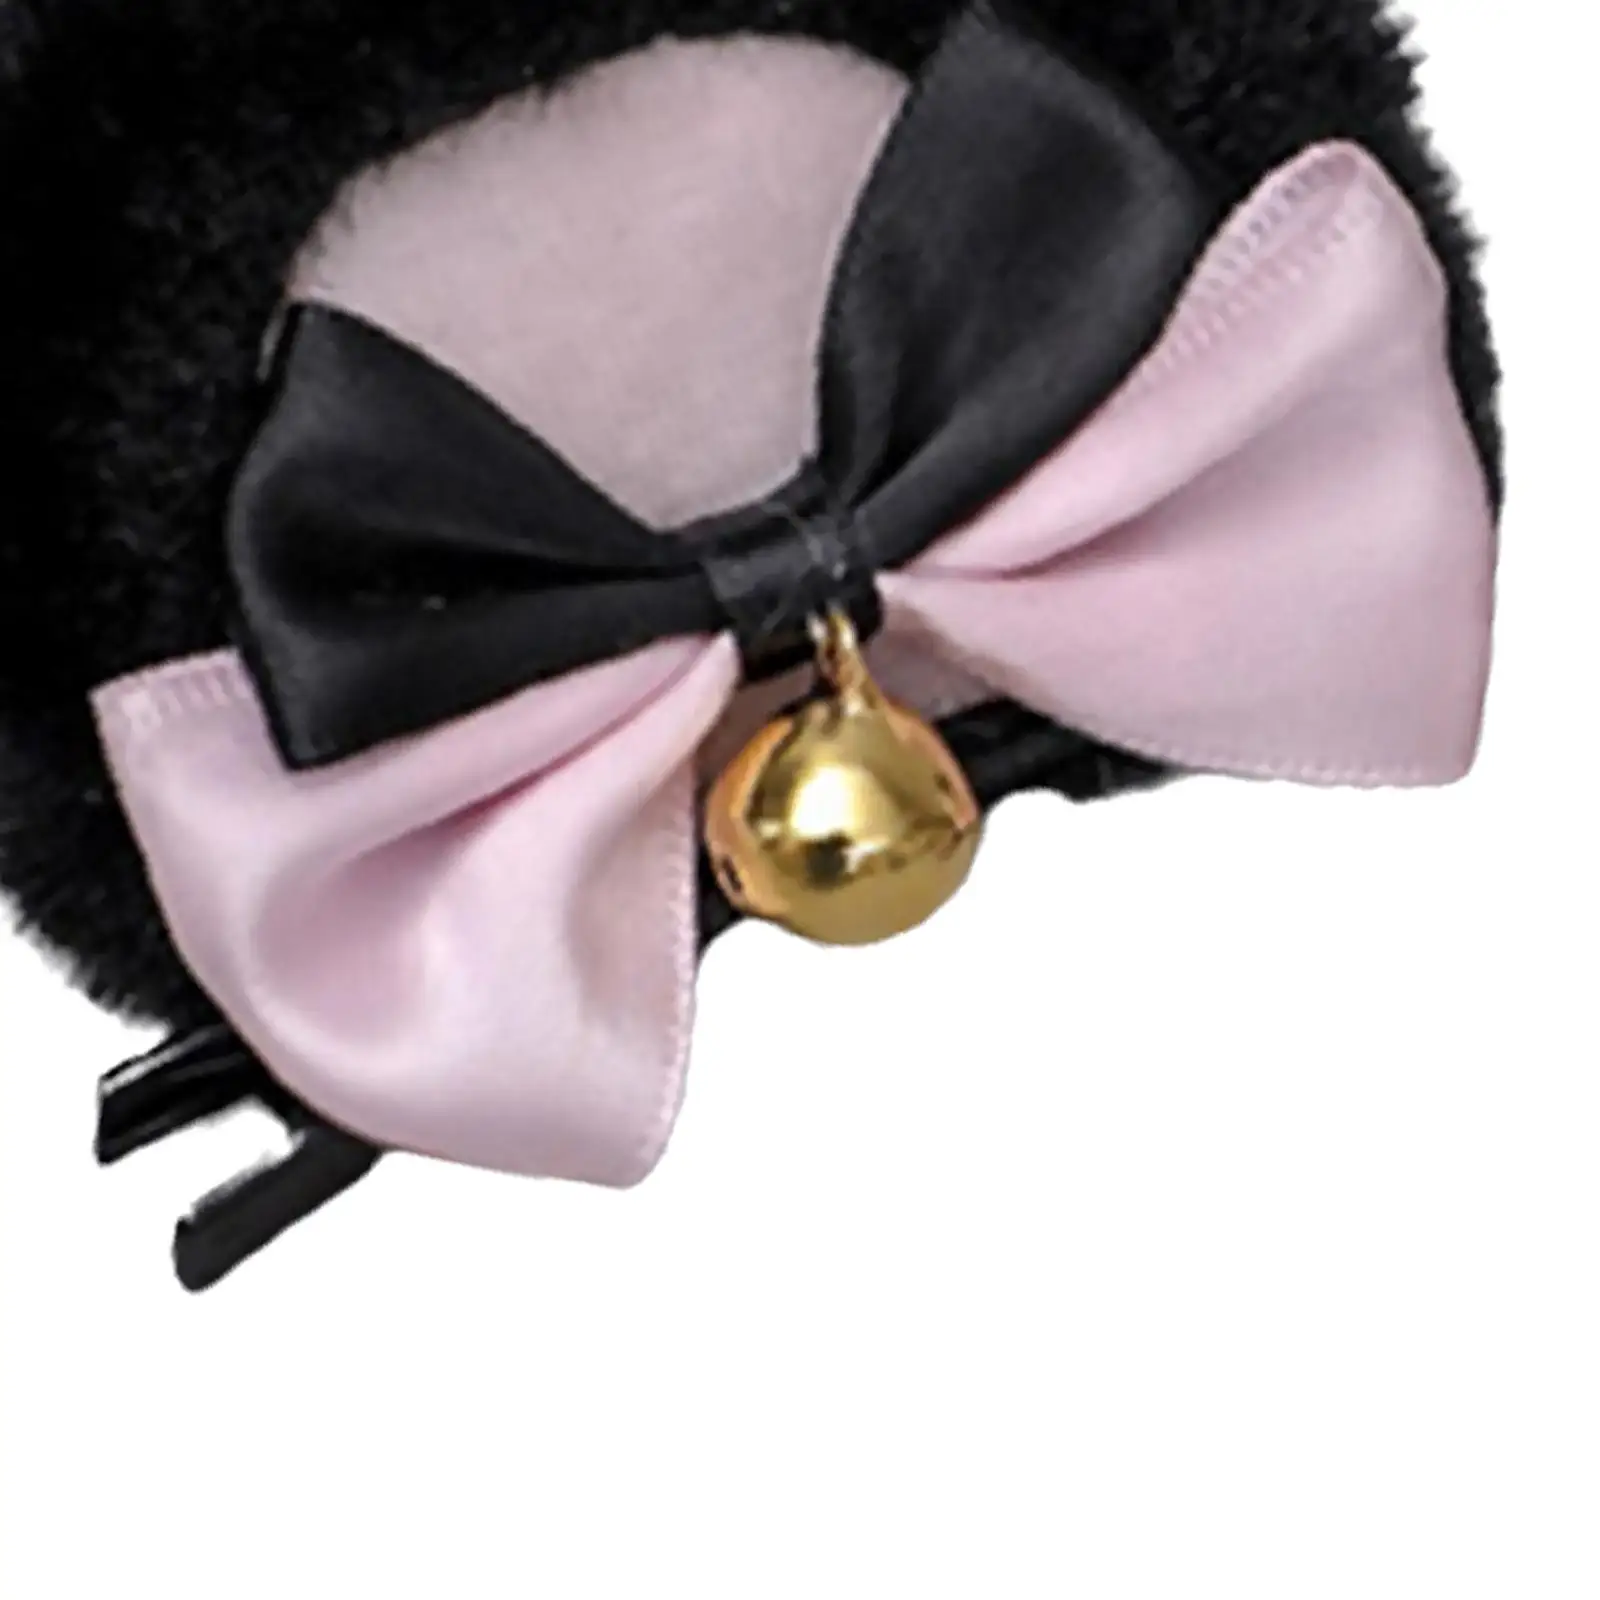 2 Pieces Bear Ear Hair Clip Cartoon Animal Ears Hair Clips Cute Party Headpiece